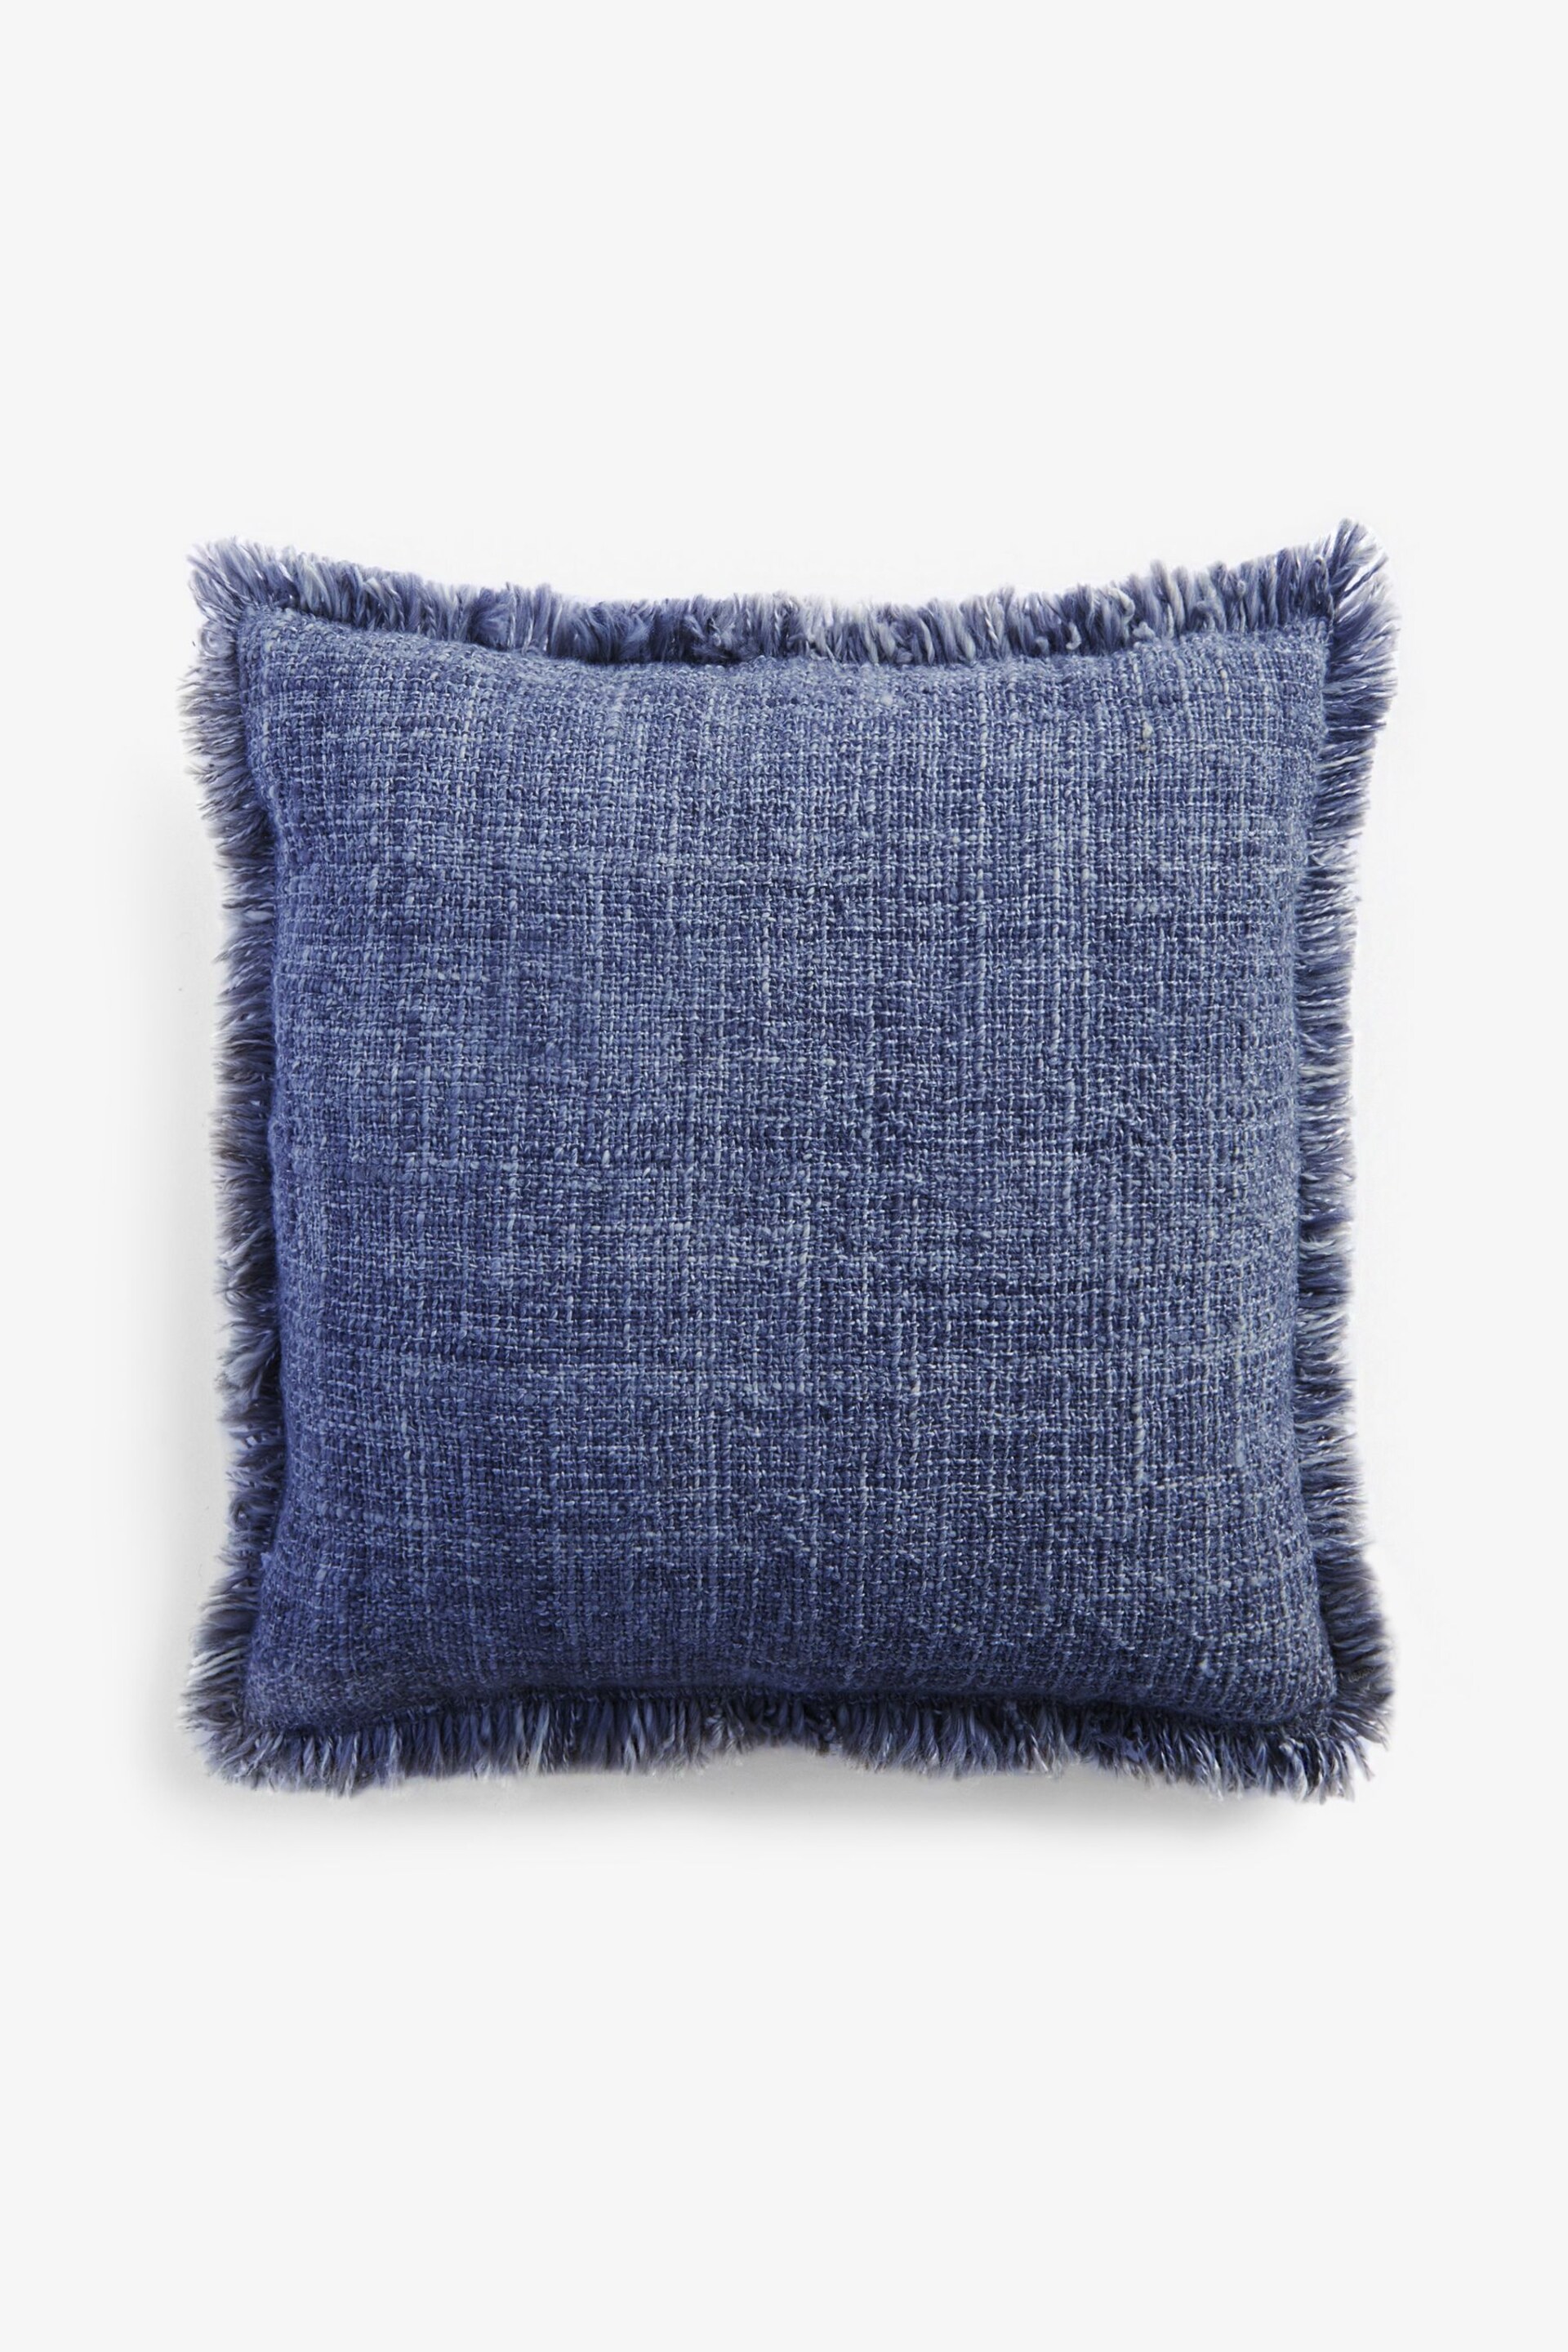 Blue 50 x 50cm Harlston Textured Fringe Cushion - Image 2 of 4